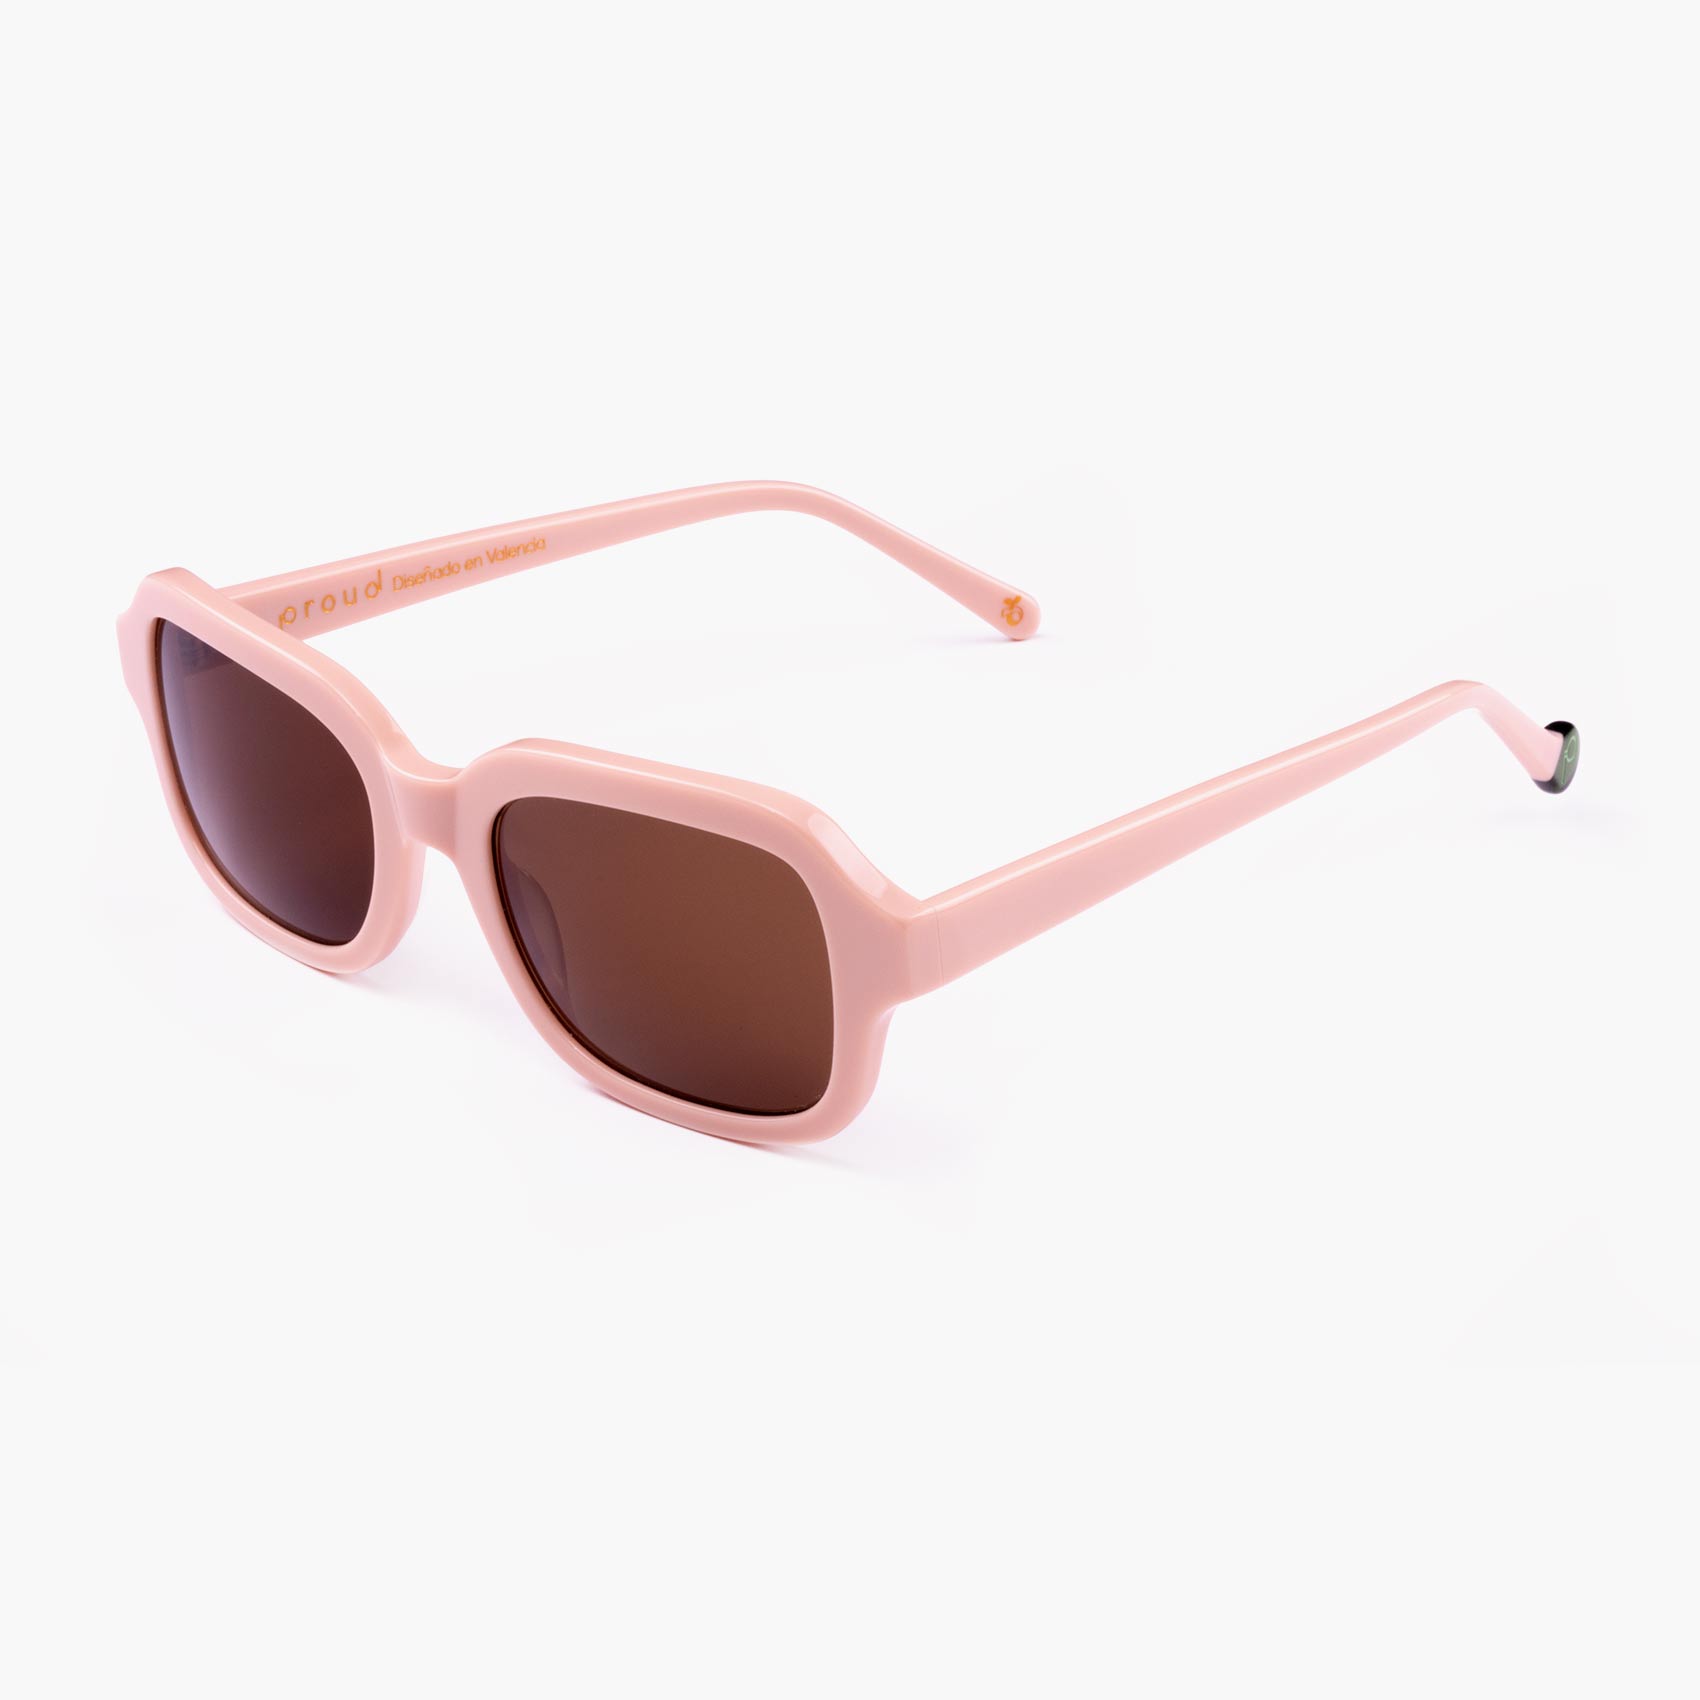 Wide sunglasses in glasses for women model Ruzafa • Proud Eyewear